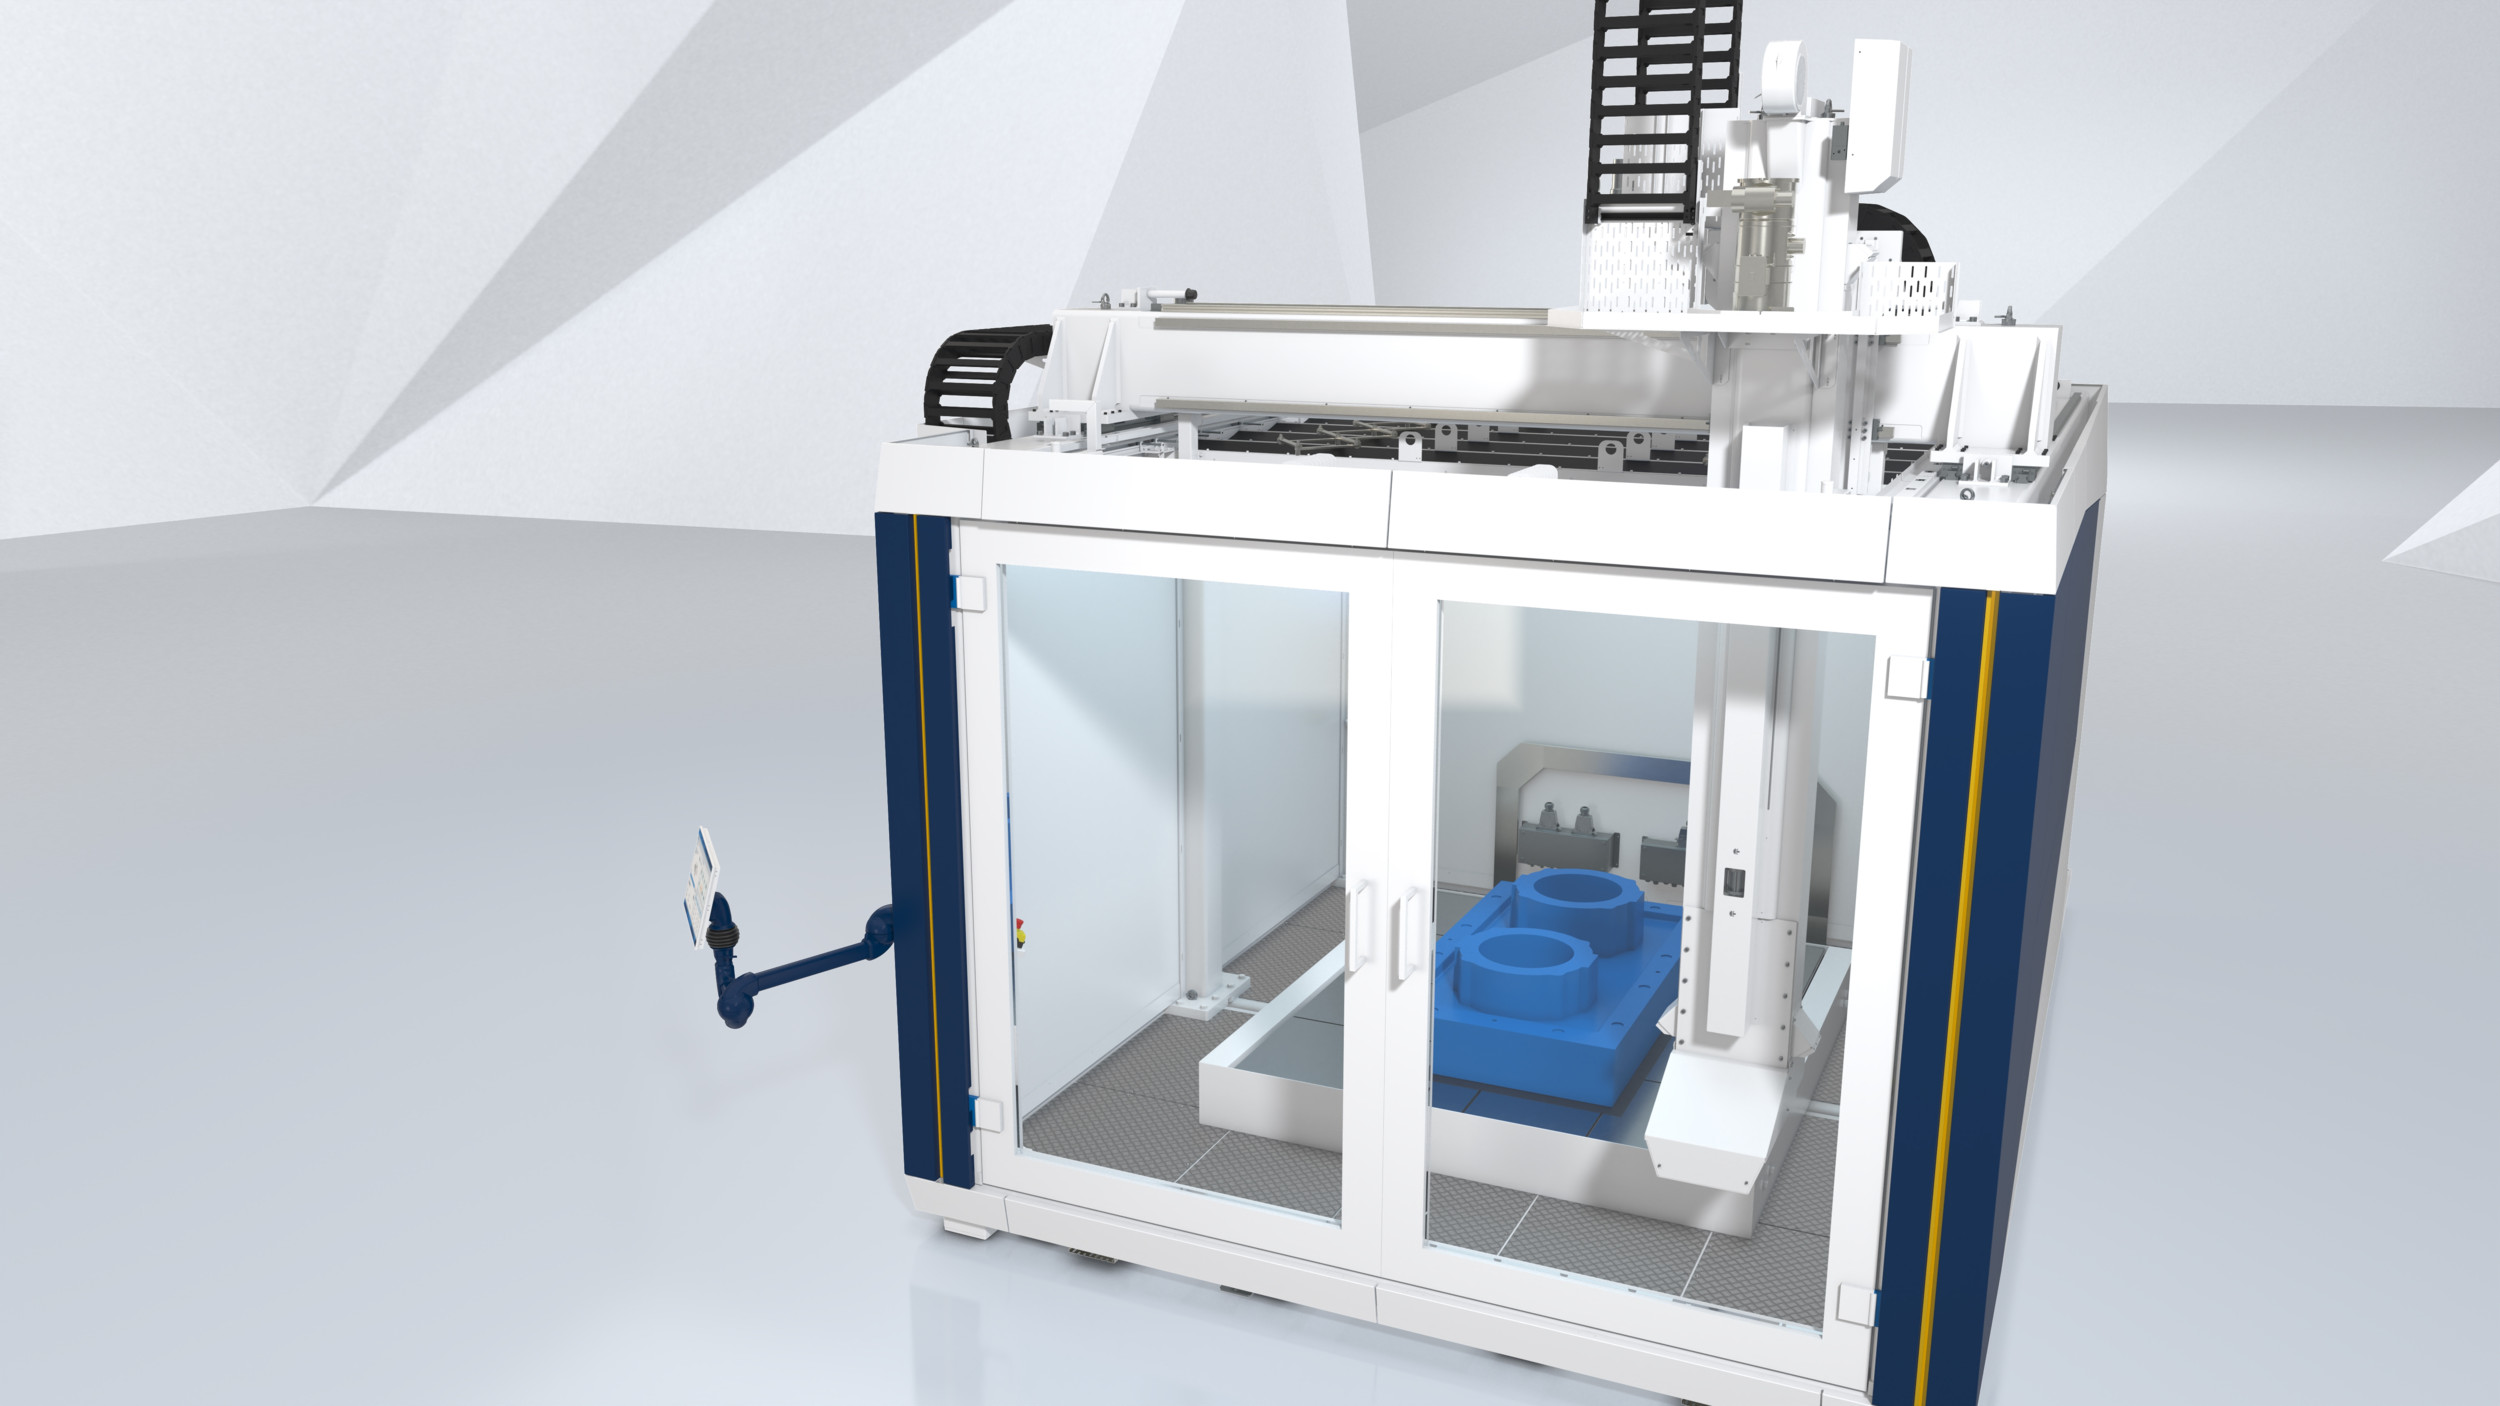 Verkaufsstart erfolgt: Der Großformant-3D-Drucker Powerprint von Krauss Maffei arbeitet mit Granulat und kann bis zu 2 m x 2,5 m x 2 m  3D-drucken.